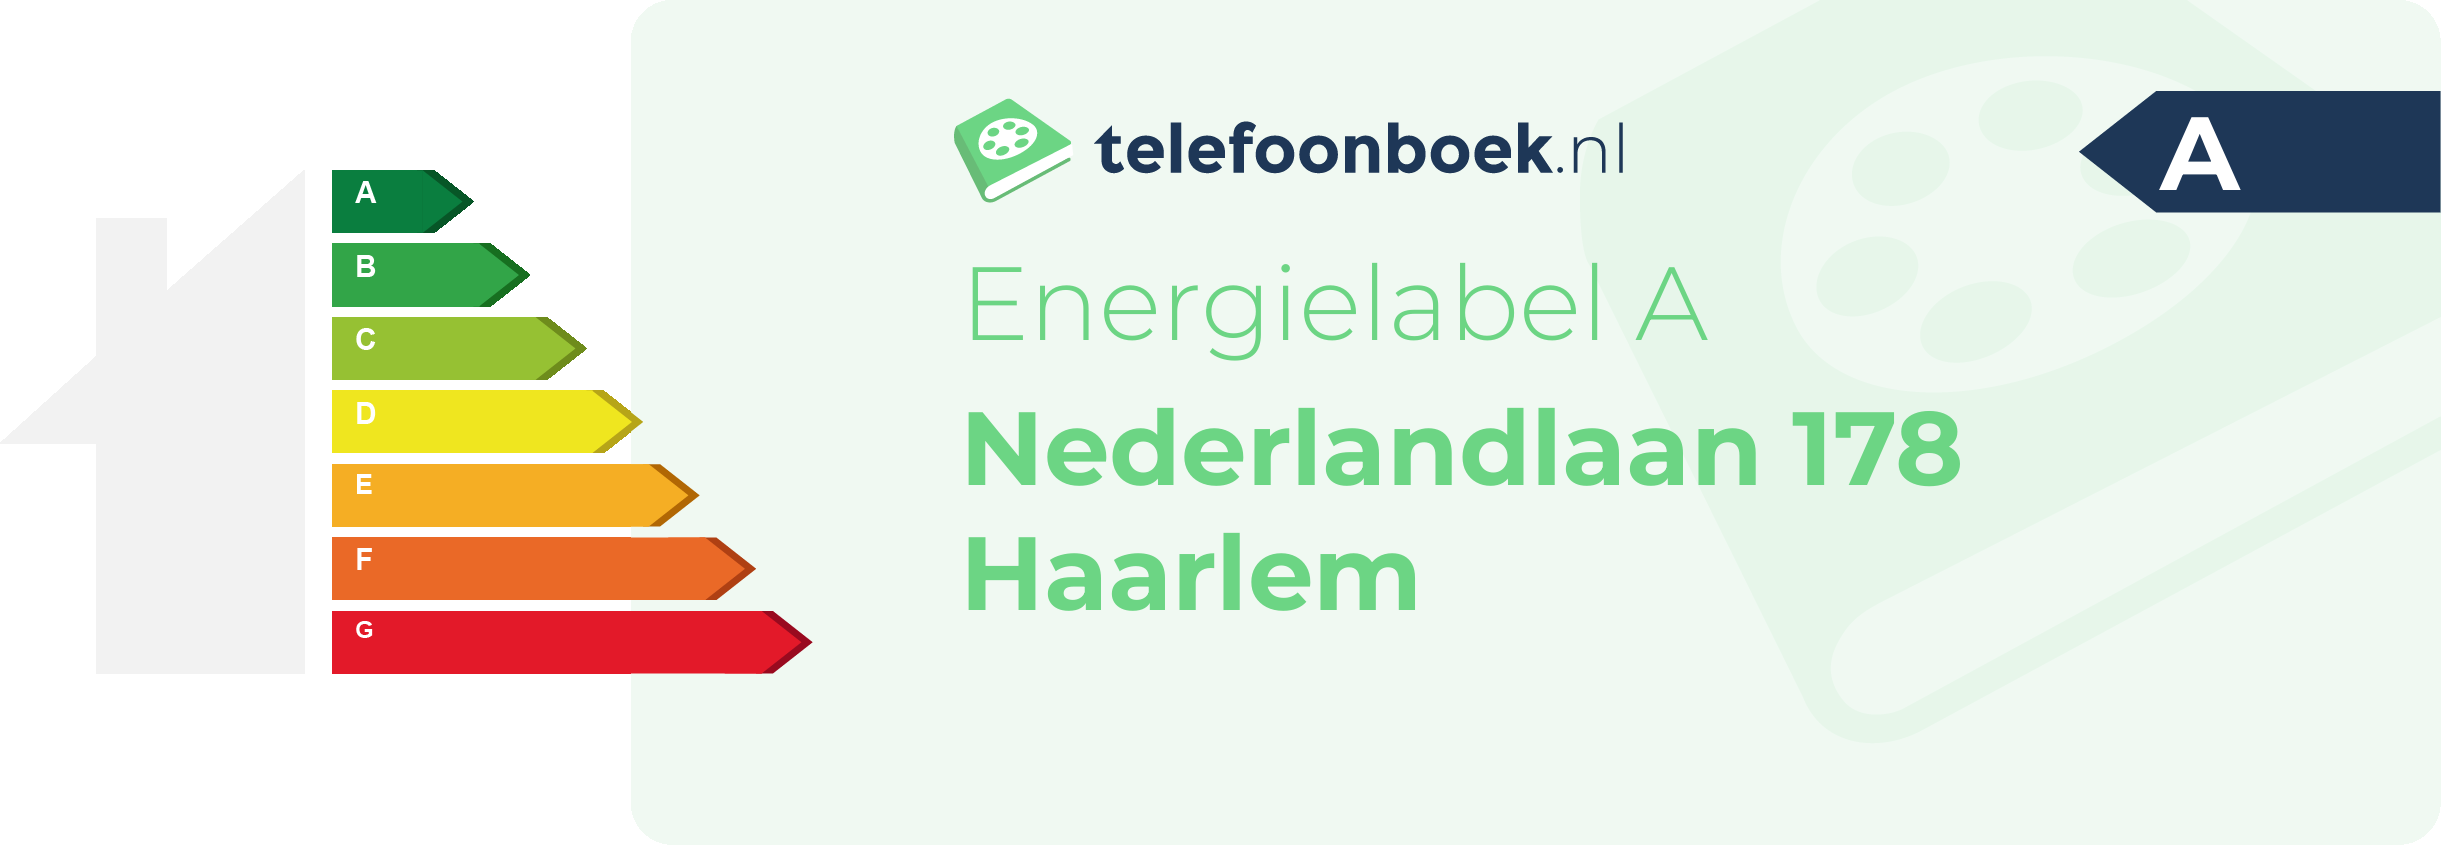 Energielabel Nederlandlaan 178 Haarlem